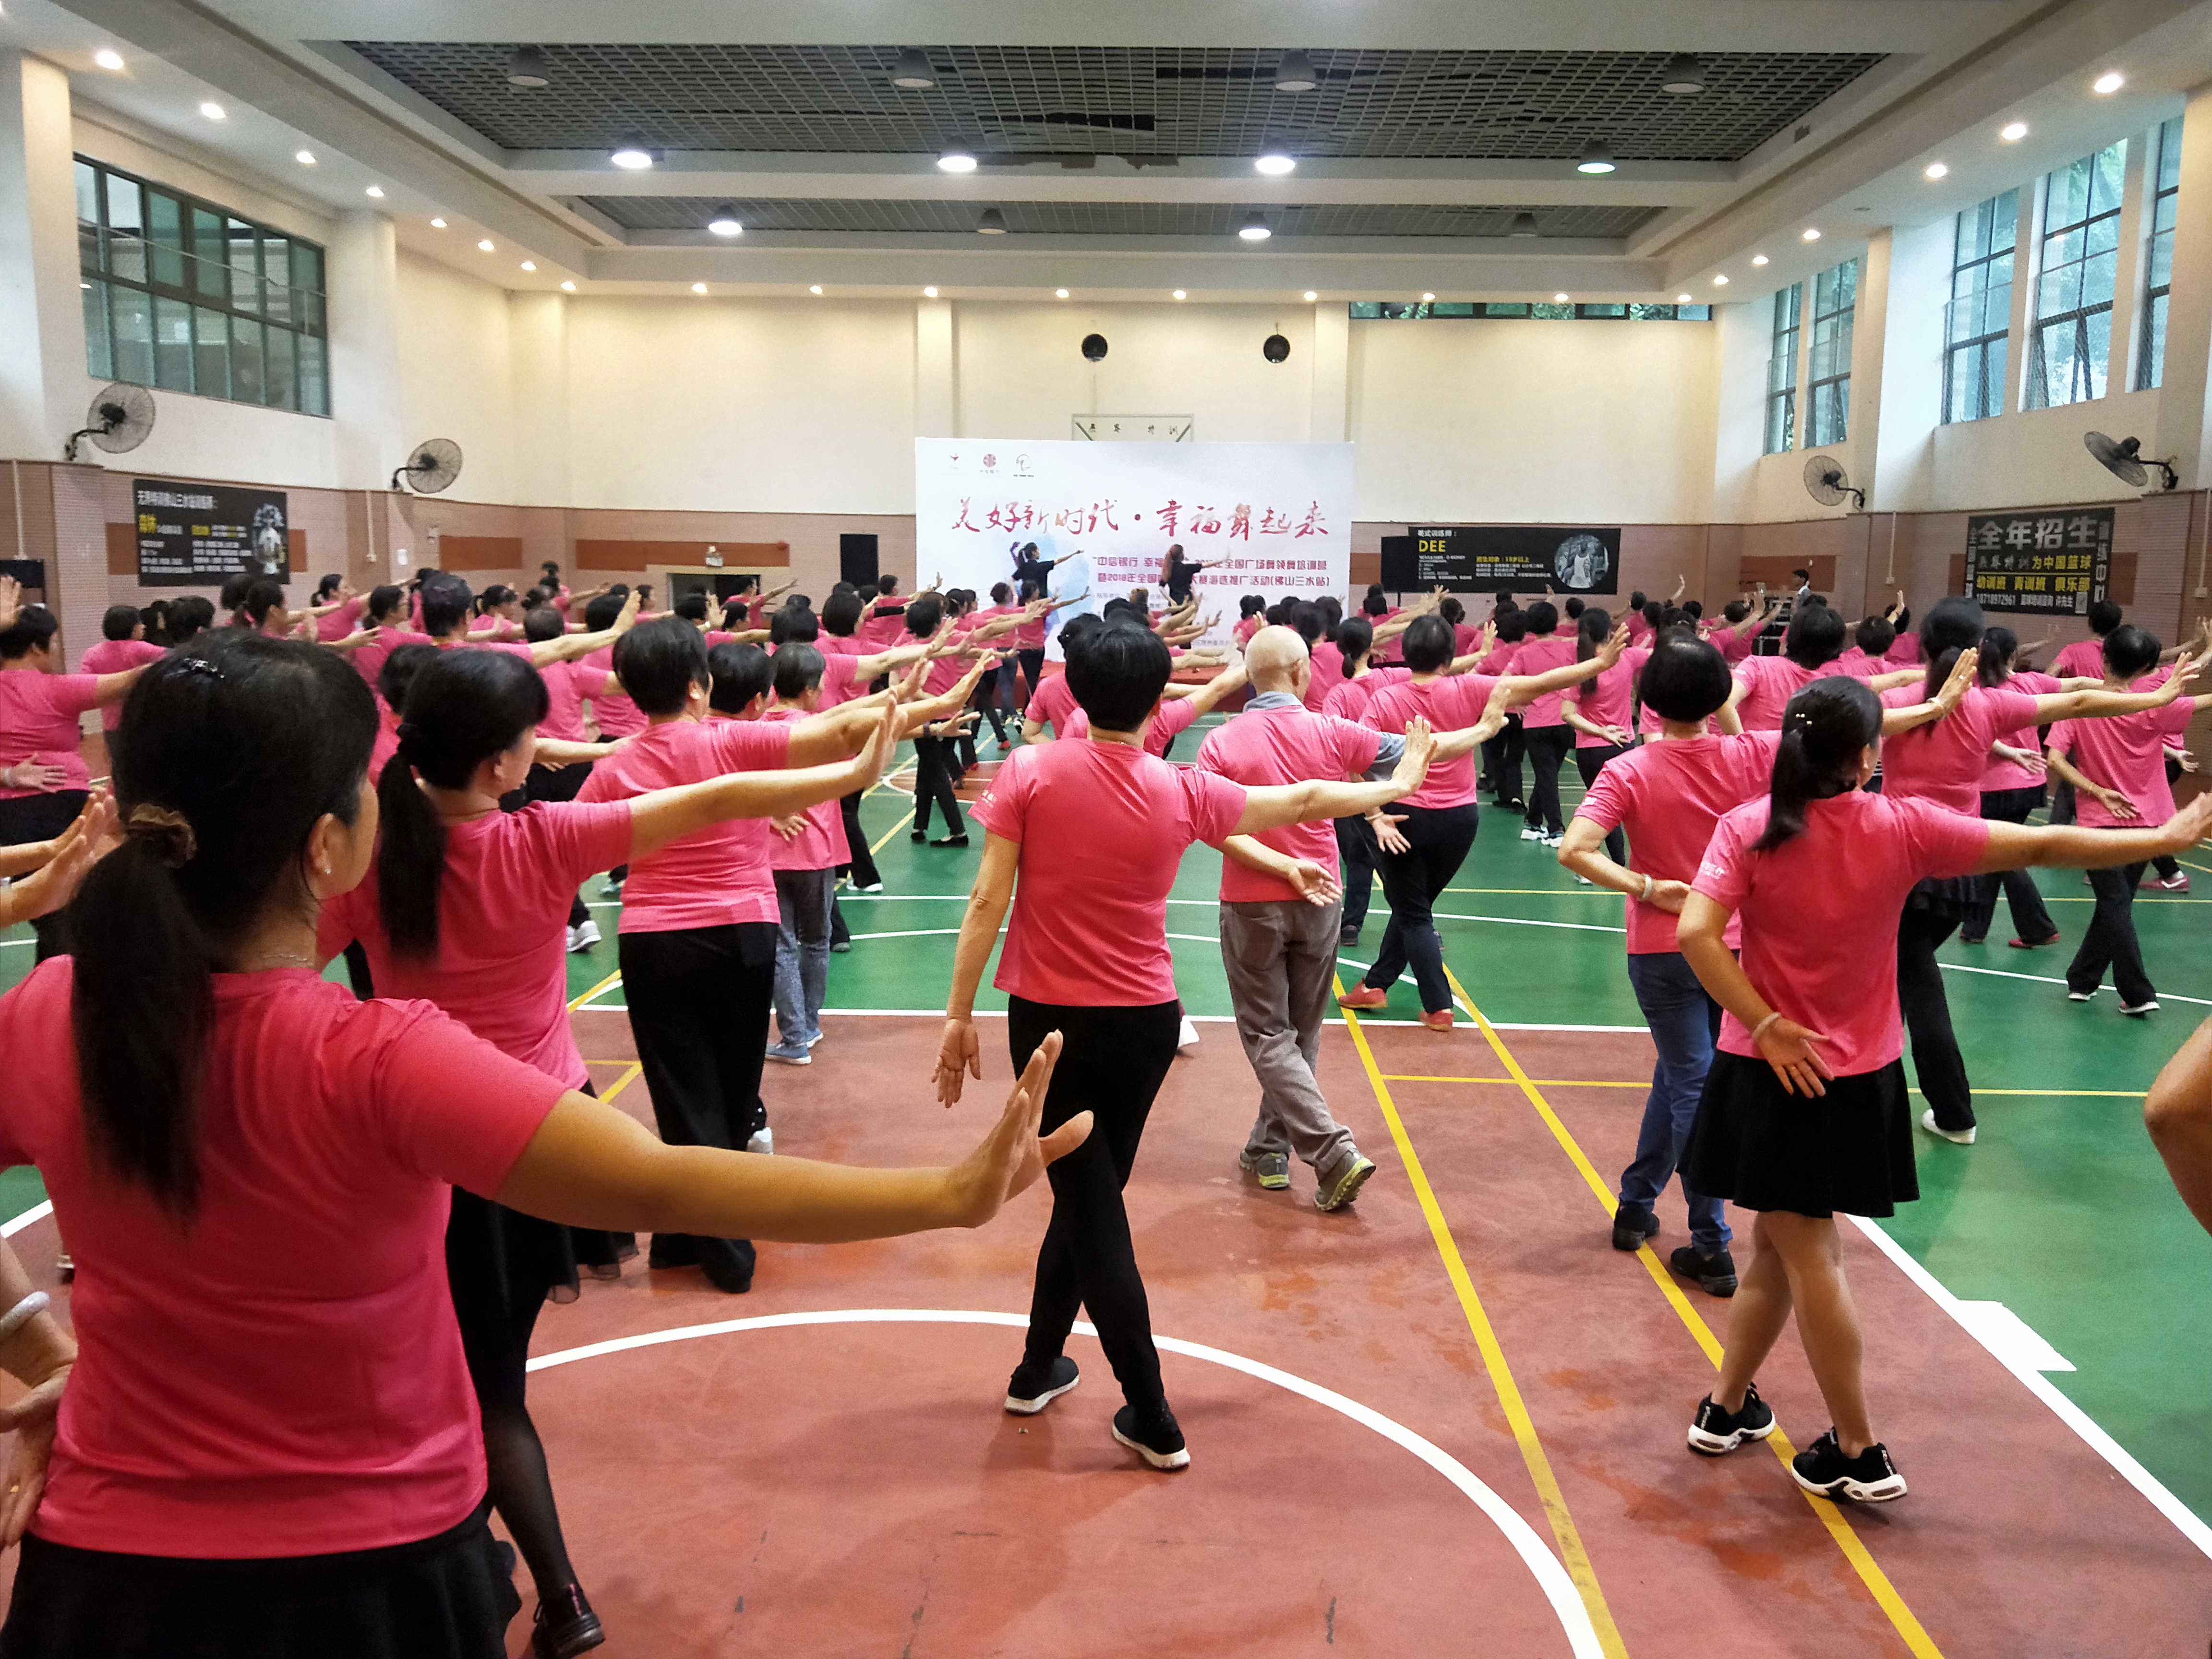 与社区合作举办广场舞培训营